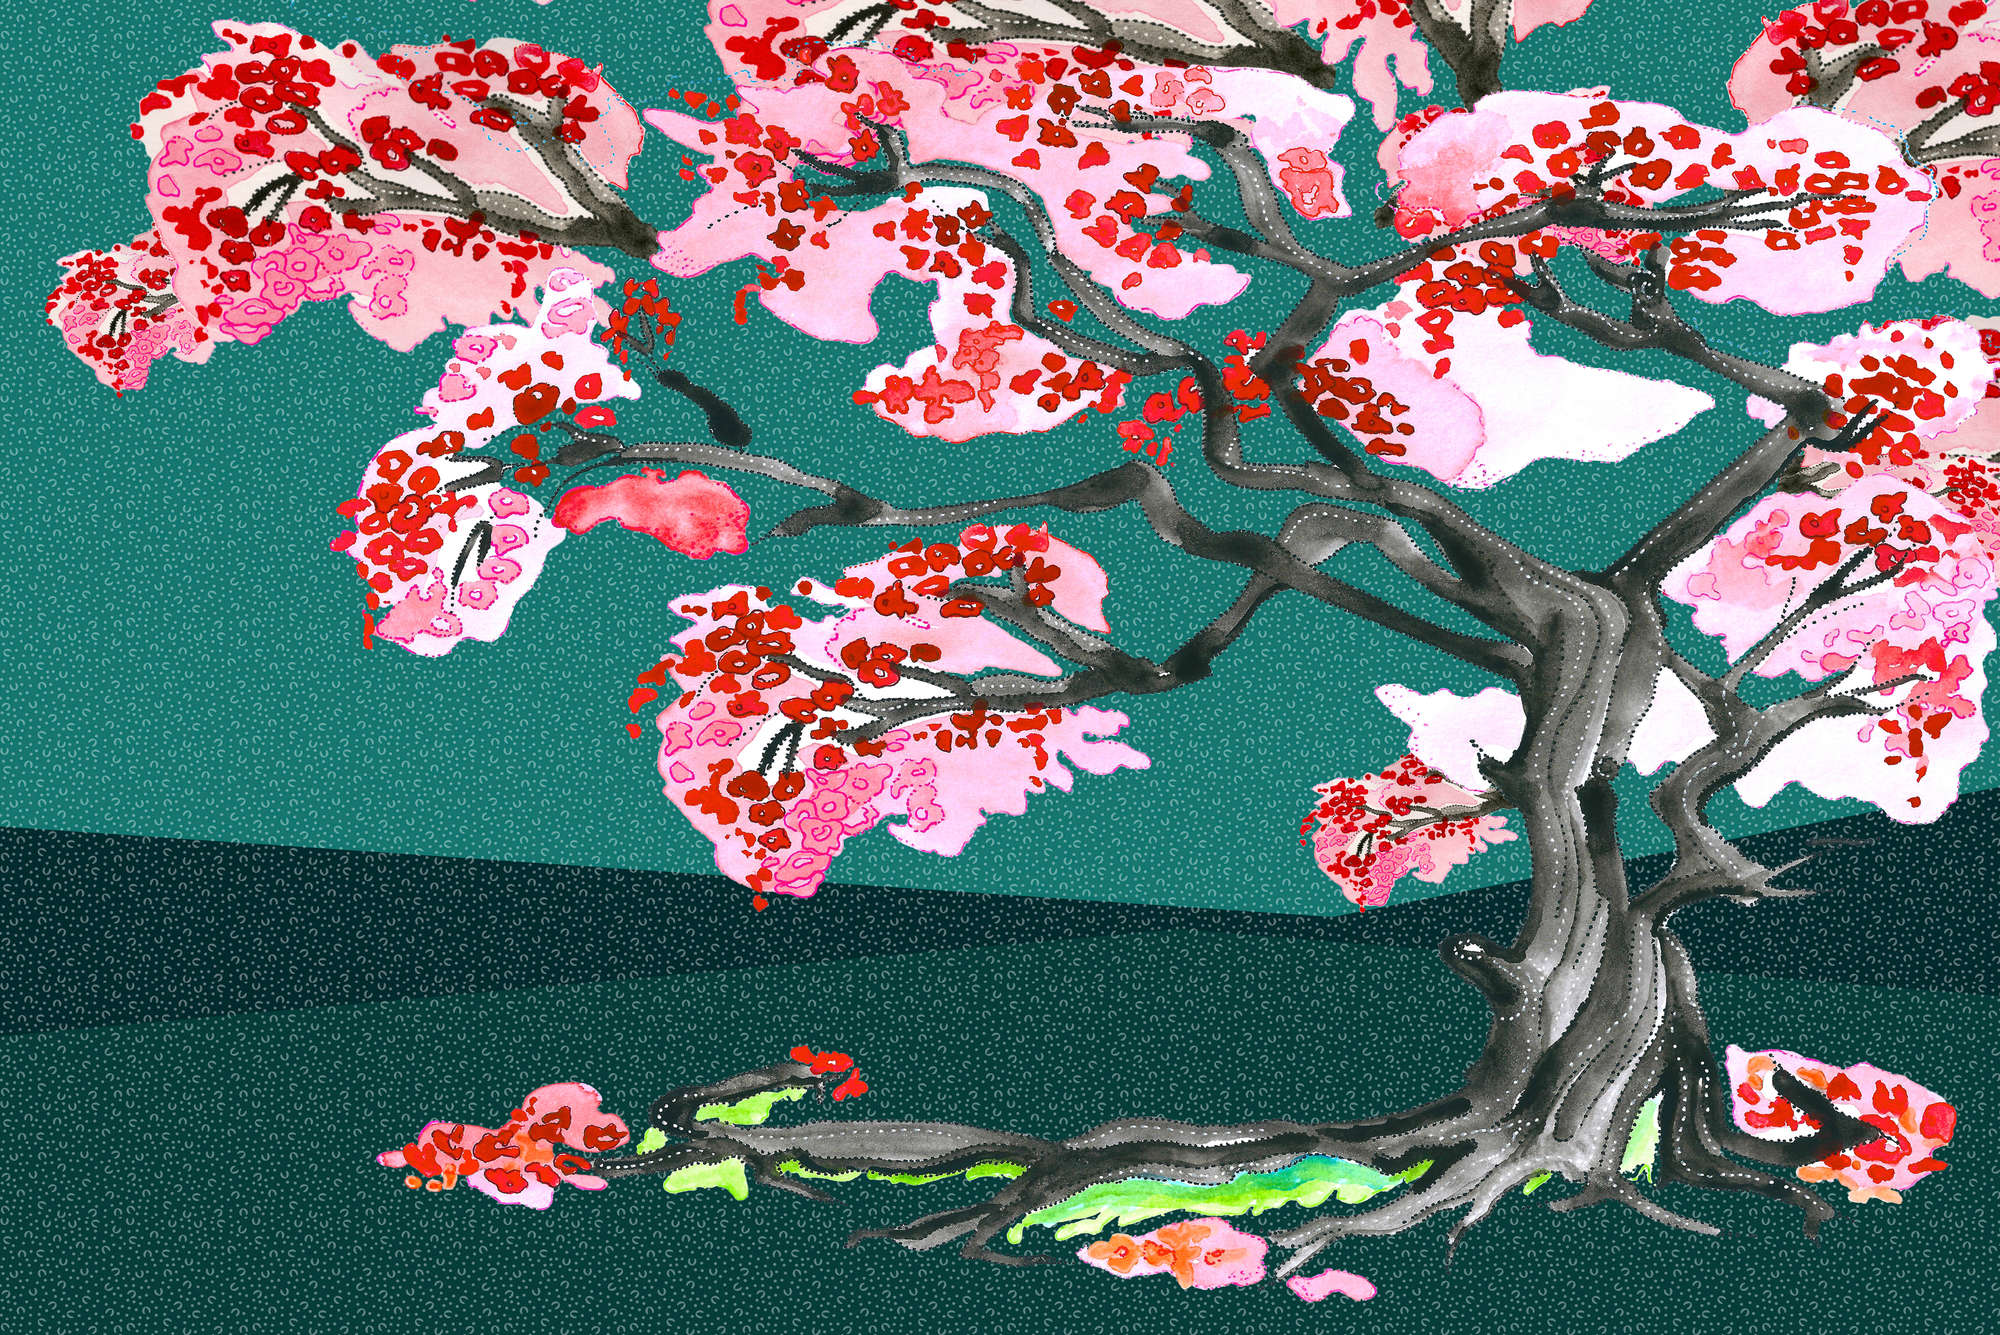             Papier peint fleurs de cerisiers style comics asiatique sur intissé lisse premium
        